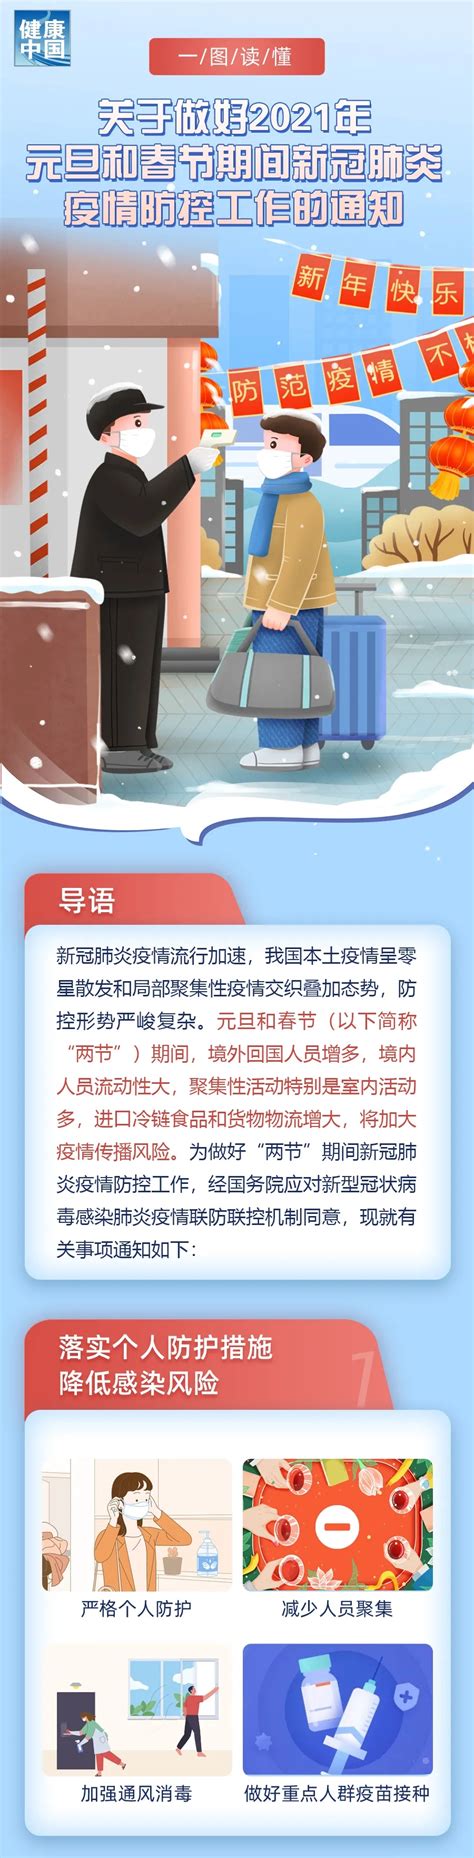 春节疫情防控指南海报_素材中国sccnn.com